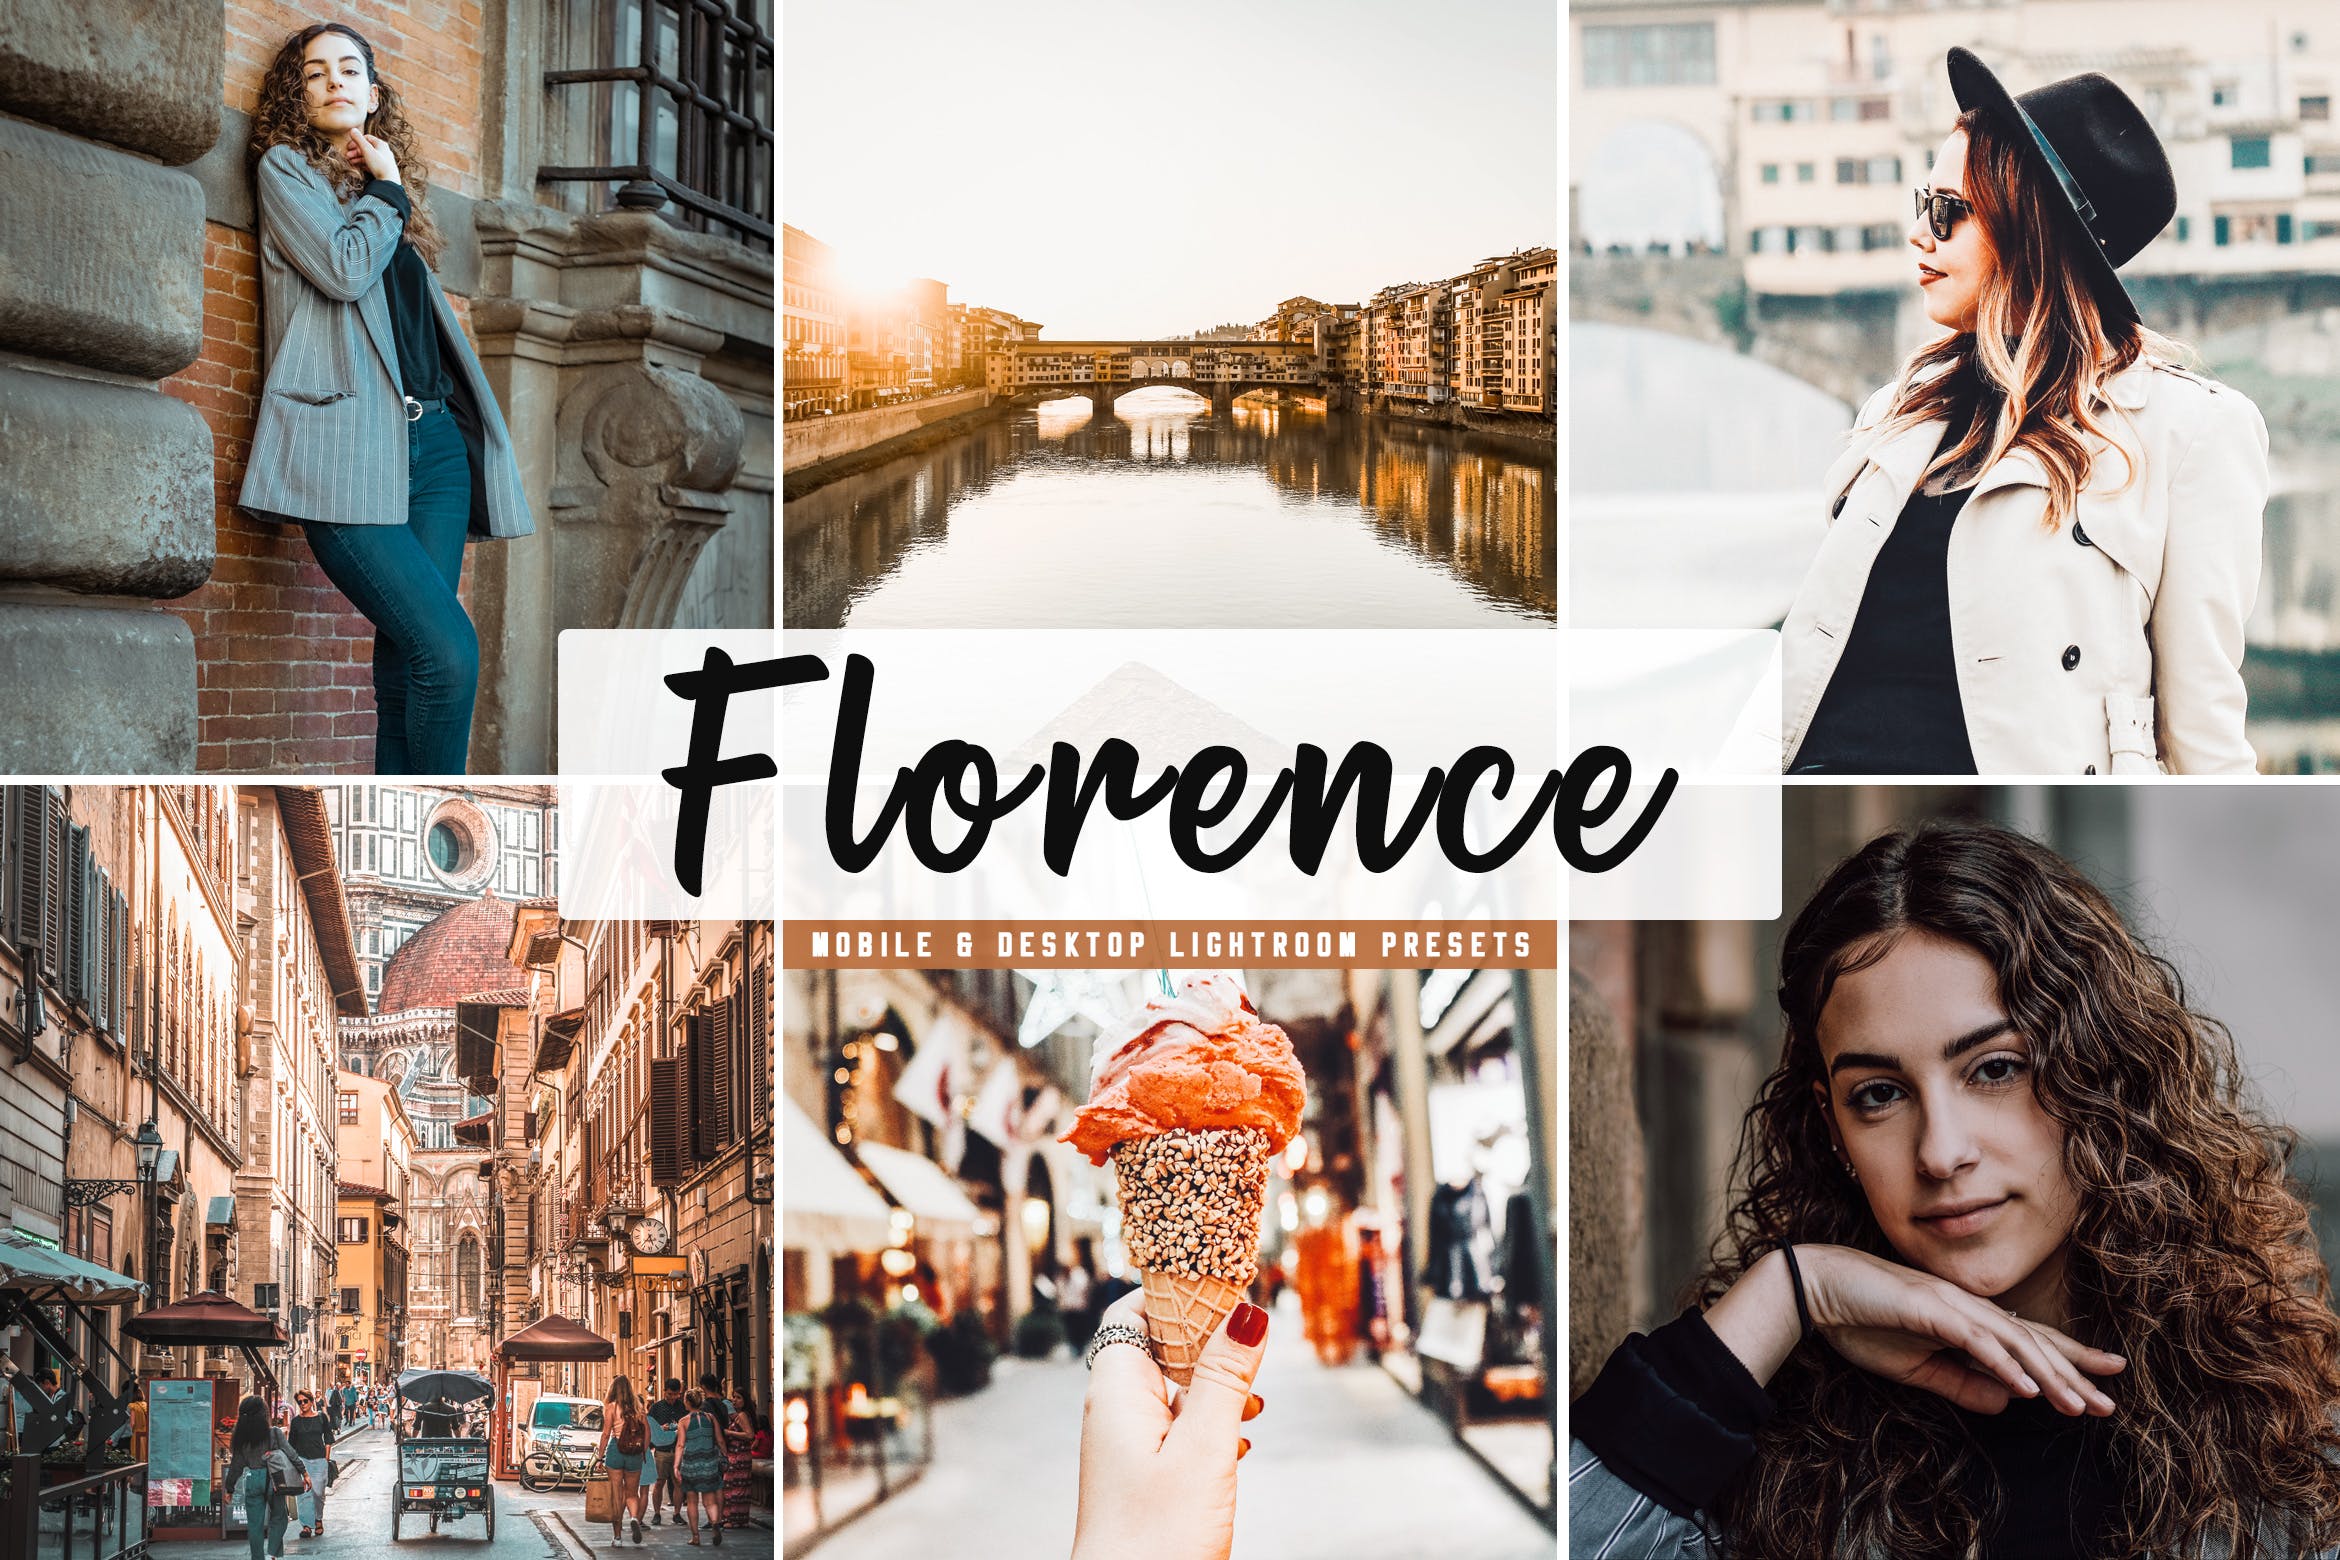 摄影大师级照片后期调色第一素材精选LR预设下载 Florence Mobile & Desktop Lightroom Presets插图